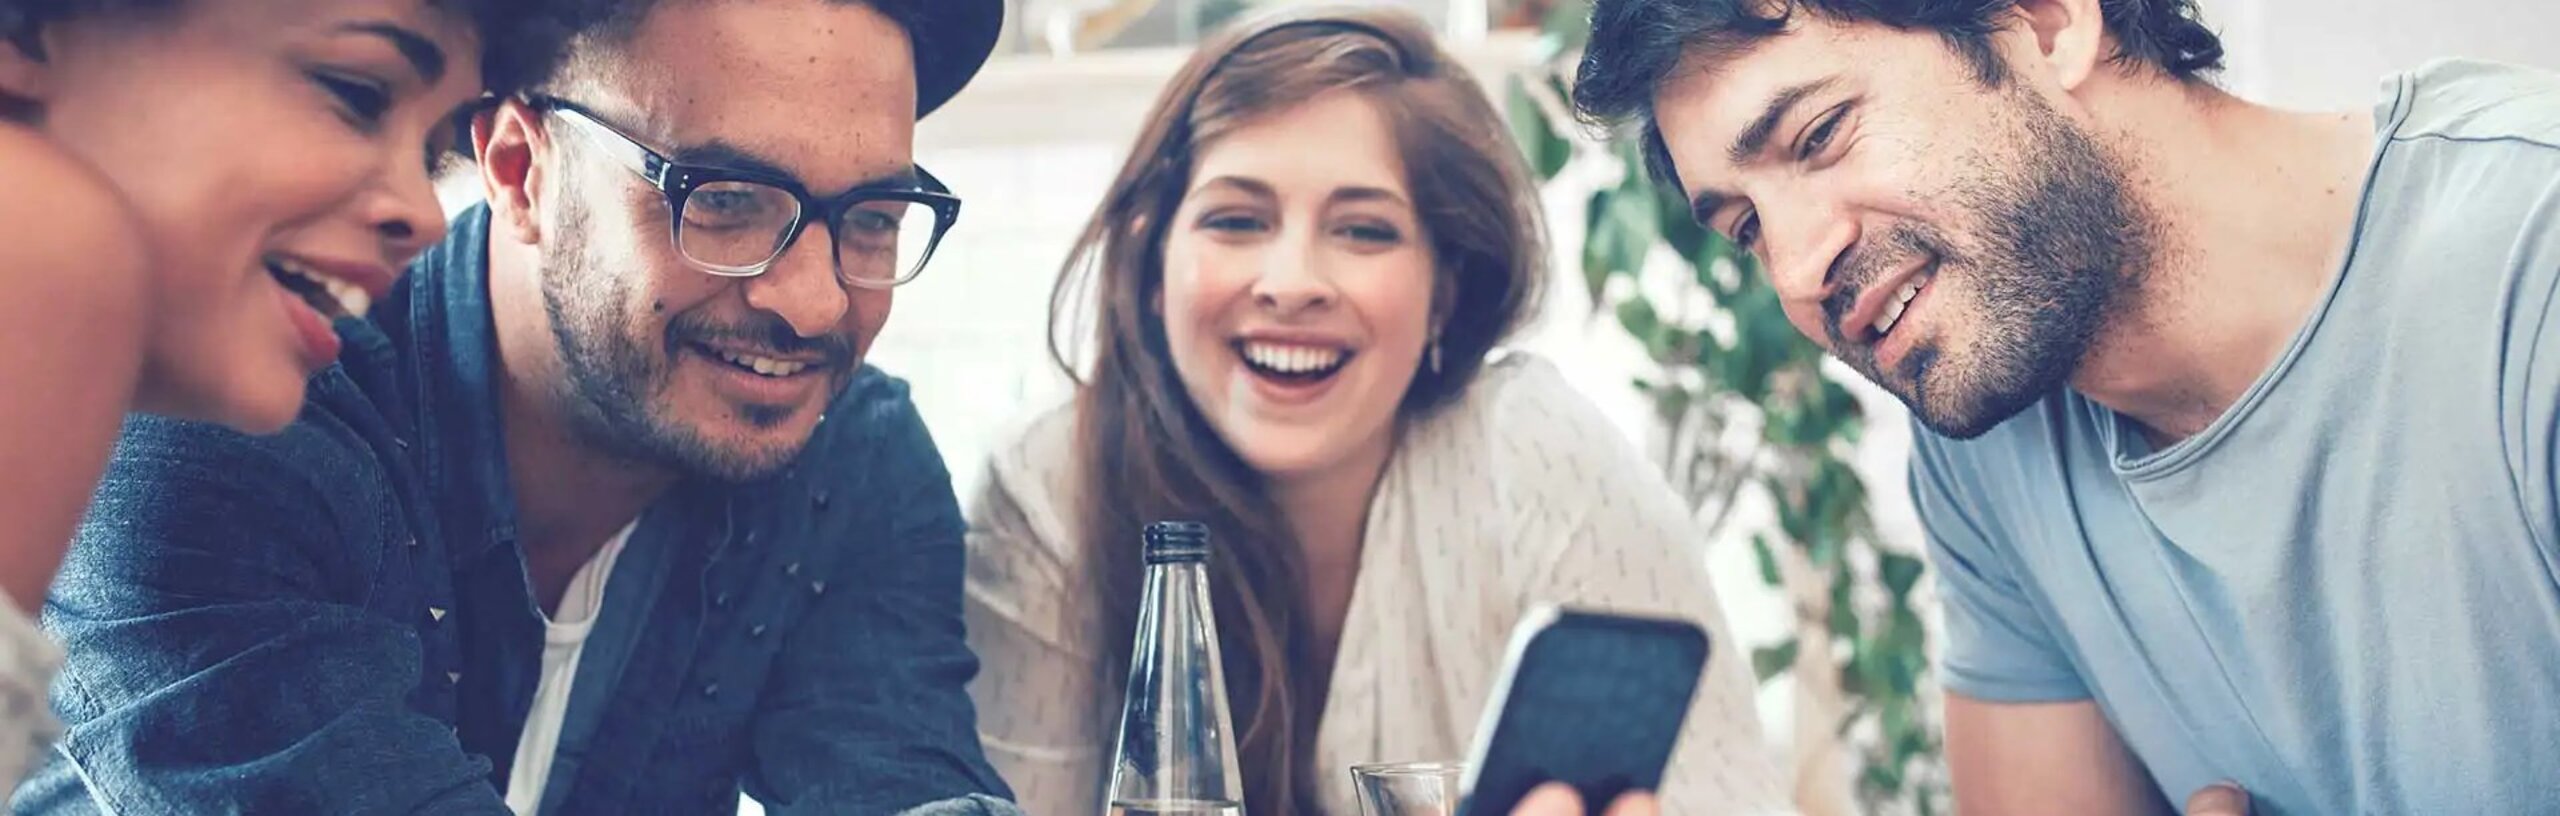 Vier junge Menschen sitzen um einen Tisch, gucken auf ein Smartphone und freuen sich.